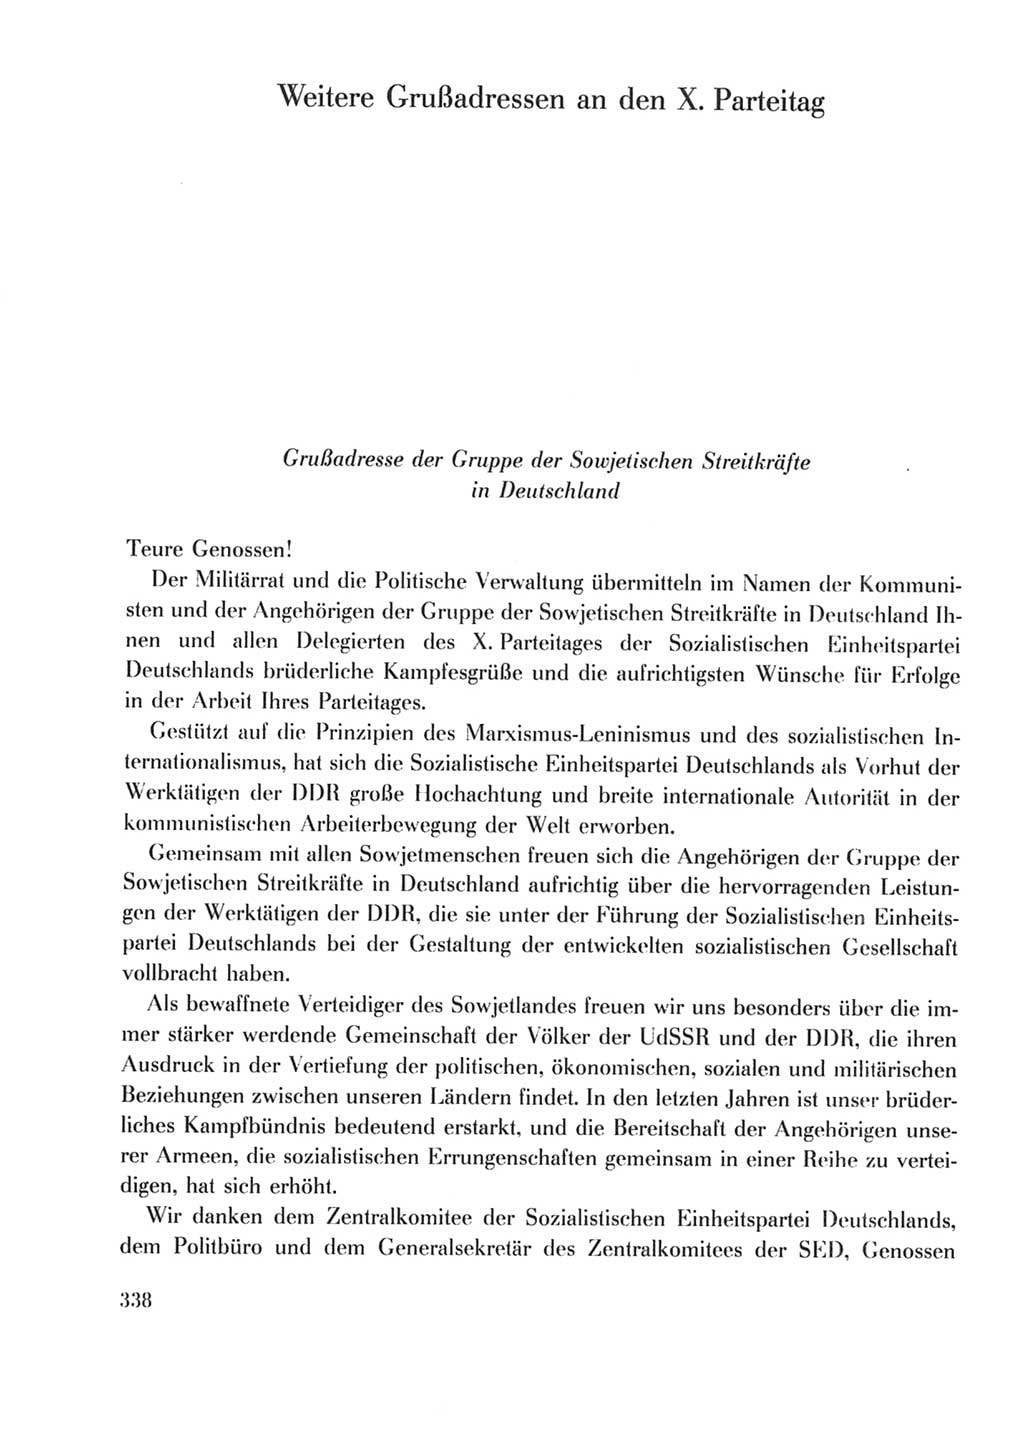 Protokoll der Verhandlungen des Ⅹ. Parteitages der Sozialistischen Einheitspartei Deutschlands (SED) [Deutsche Demokratische Republik (DDR)] 1981, Band 2, Seite 338 (Prot. Verh. Ⅹ. PT SED DDR 1981, Bd. 2, S. 338)